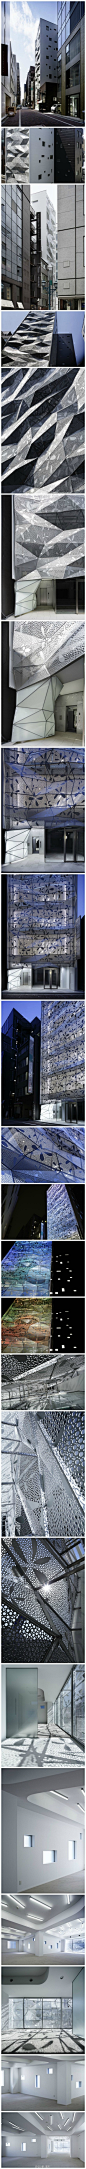 @设计联-图库
梦幻的建筑外观： 这是一个折叠起伏的办公大楼，通体呈银色，是由日本建筑公司Amano设计的。整个建筑采取双层的结构，从视觉方面给人以震撼和愉悦。内部设有LED照明灯，可以根据季节和时间的改变而改变亮度。在光线暗时，这栋“银座”格外显眼。@設計物語LAI @ATENO天诺国际 http://t.cn/z81OUIS